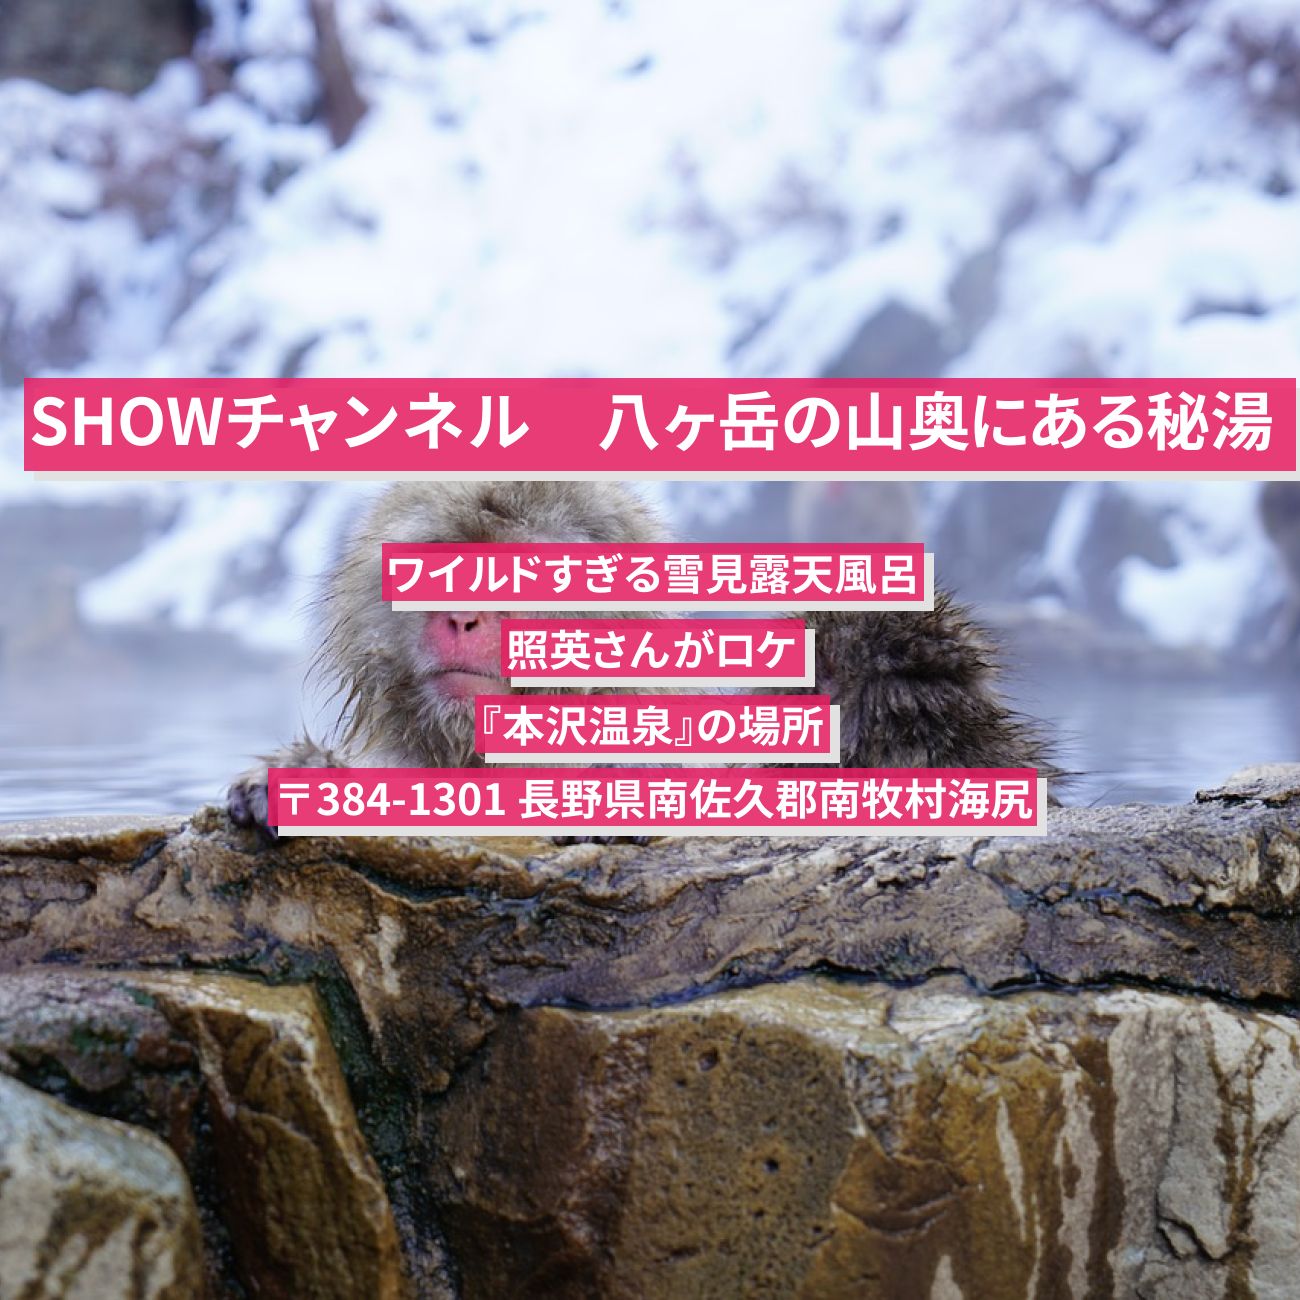 【SHOWチャンネル】八ヶ岳の山奥にある秘湯『本沢温泉』ワイルドすぎる雪見露天風呂の場所〔照英〕